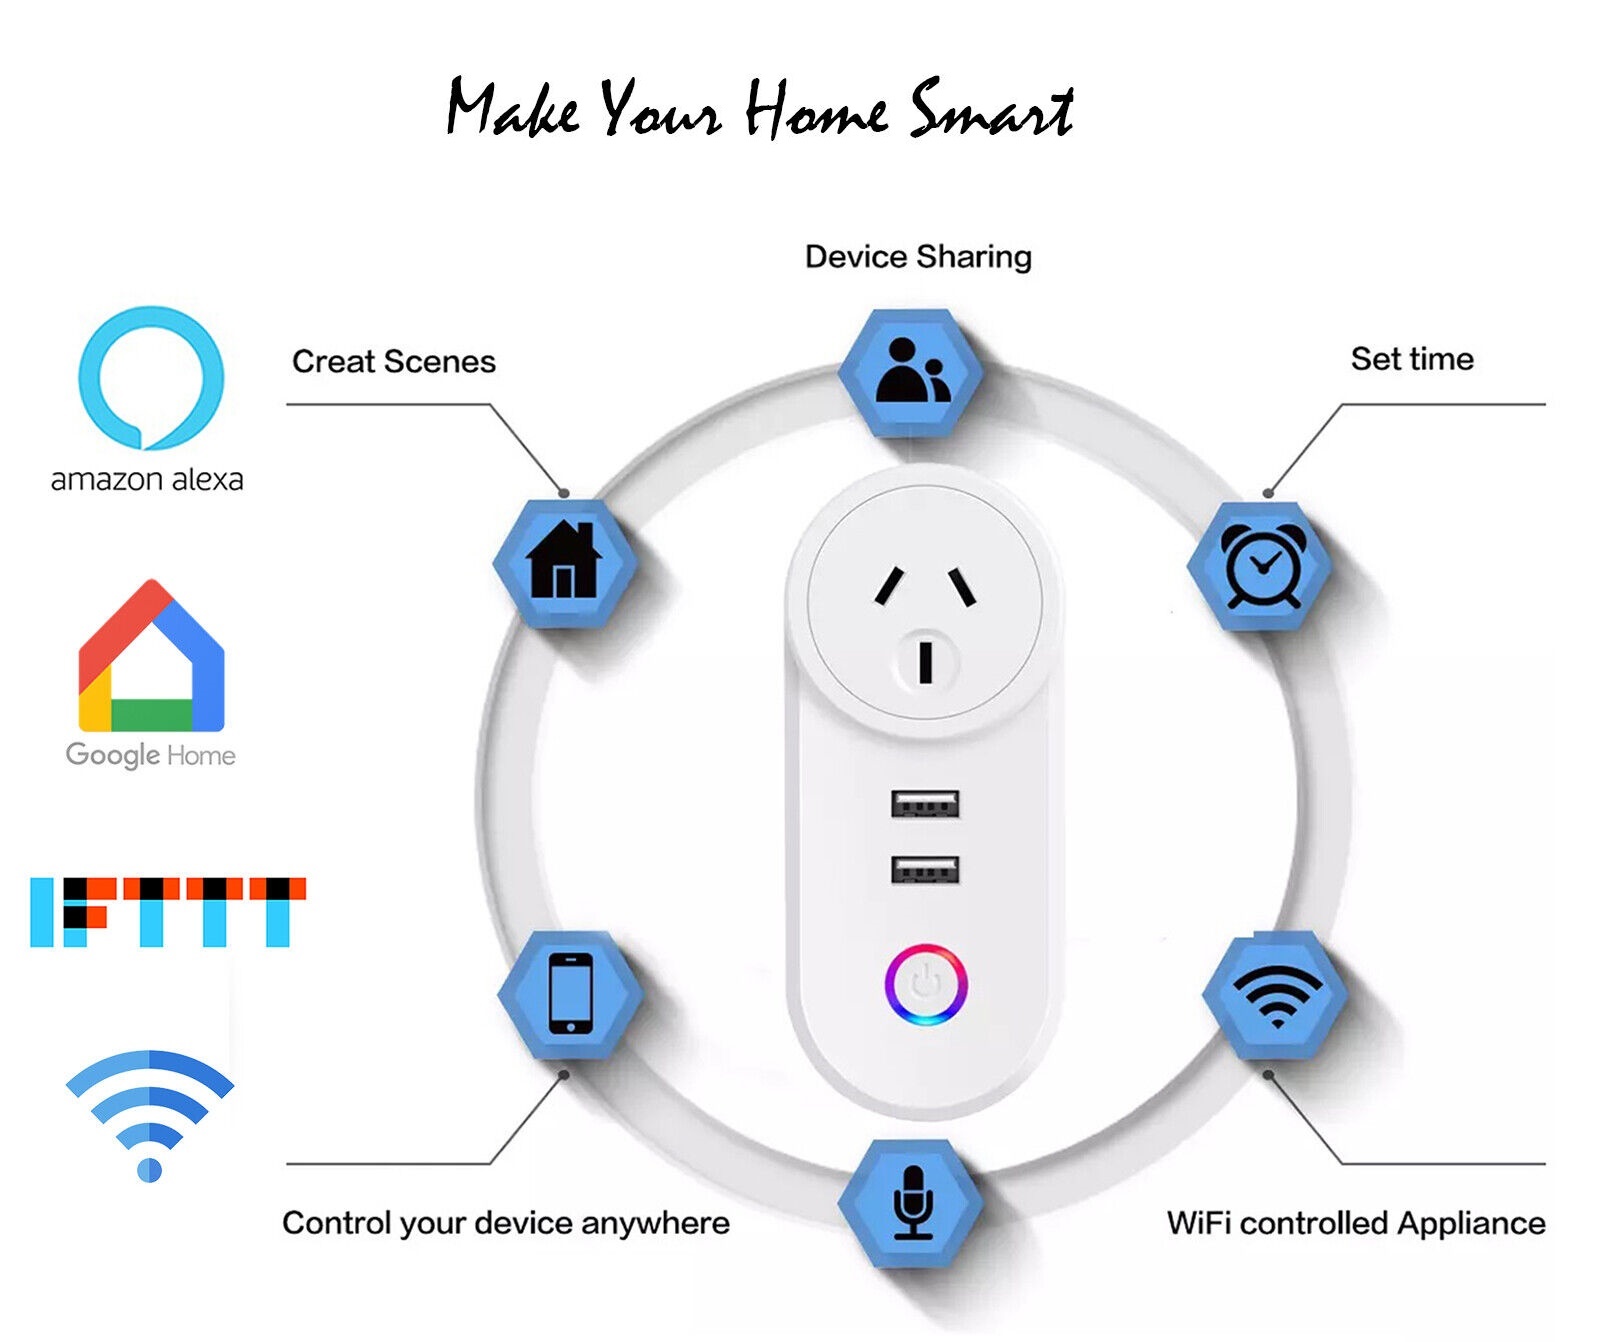 Smart Plug 2 USB port Smart Socket WiFi Smart Outlet App Control